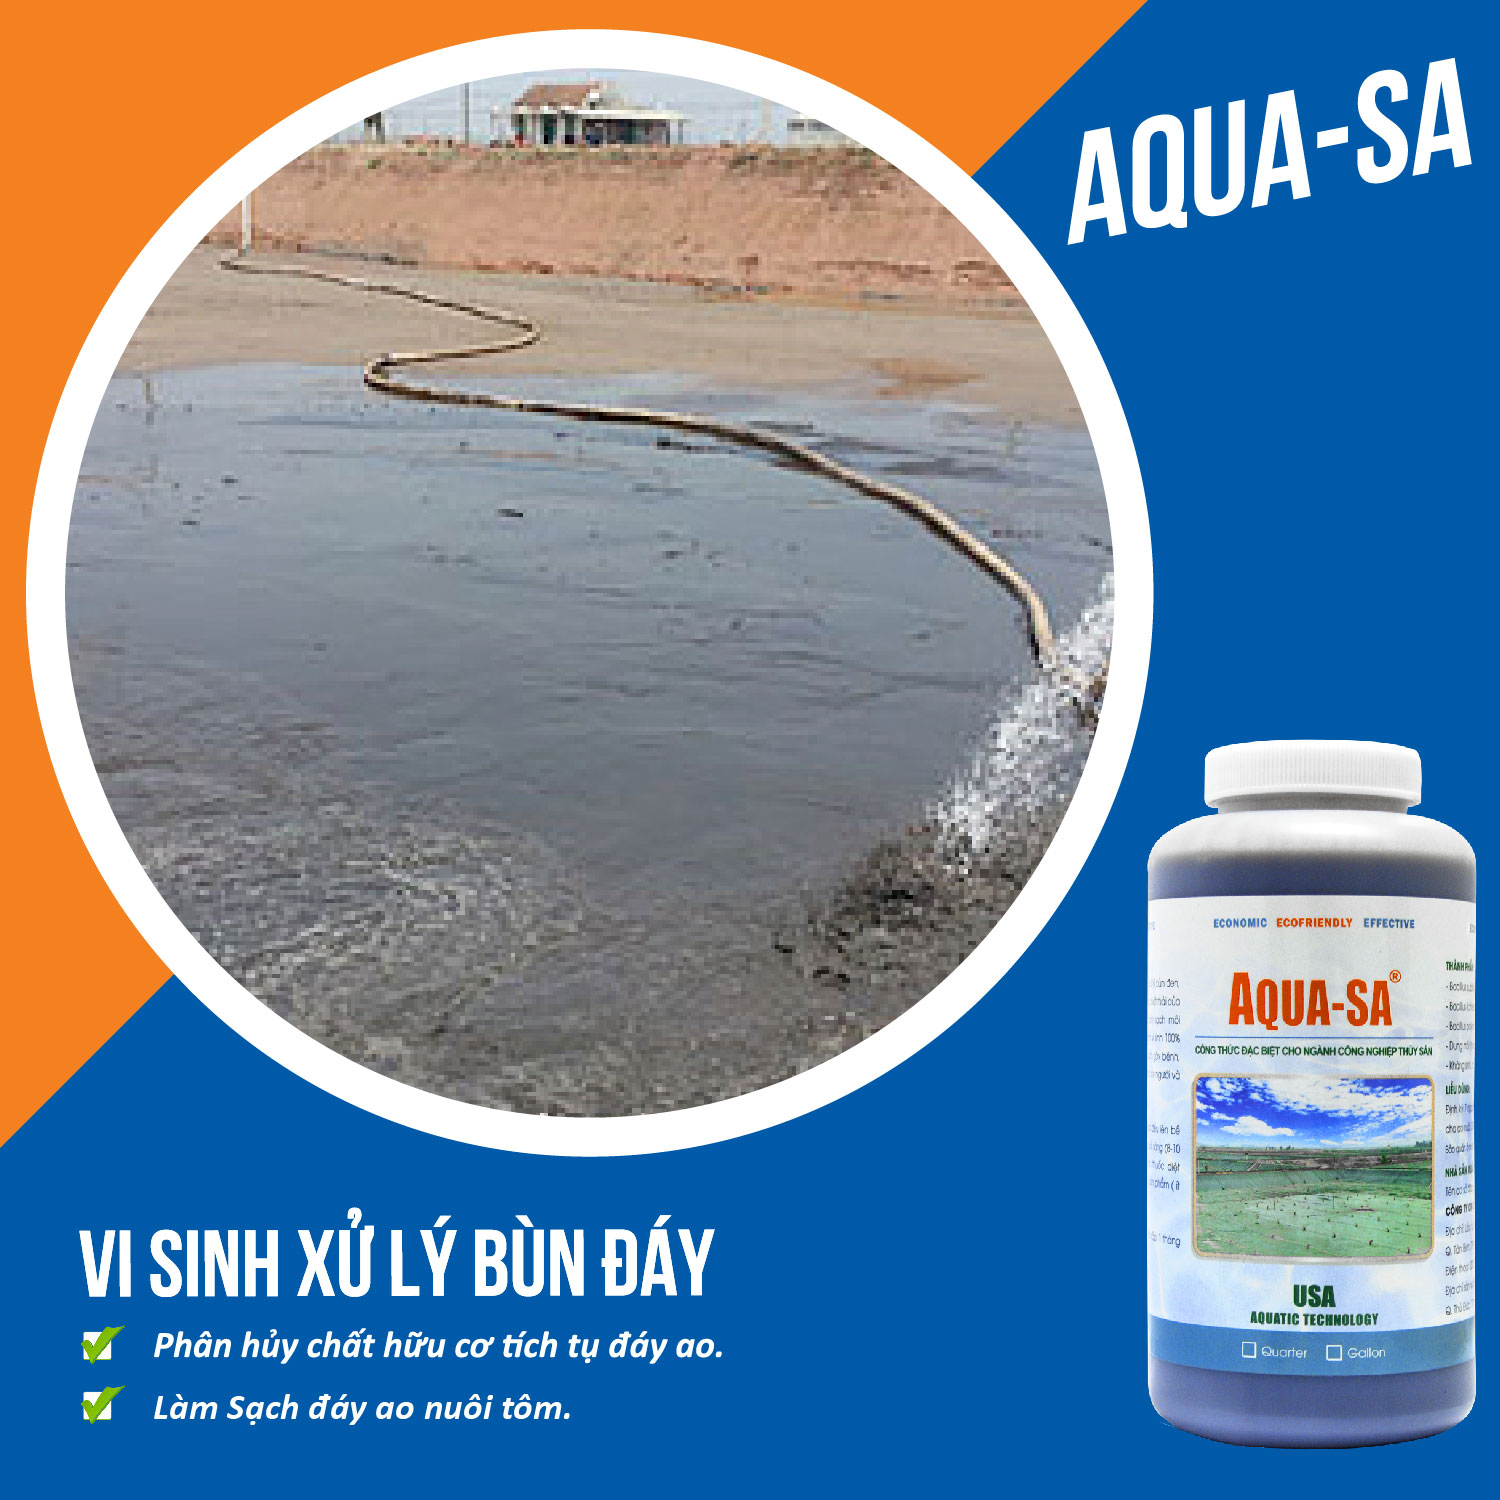 AQUA-SA - Vi sinh xử lý bùn đáy ao nuôi trồng thủy sản - Chai 1 quarter (≈ 1 lít)